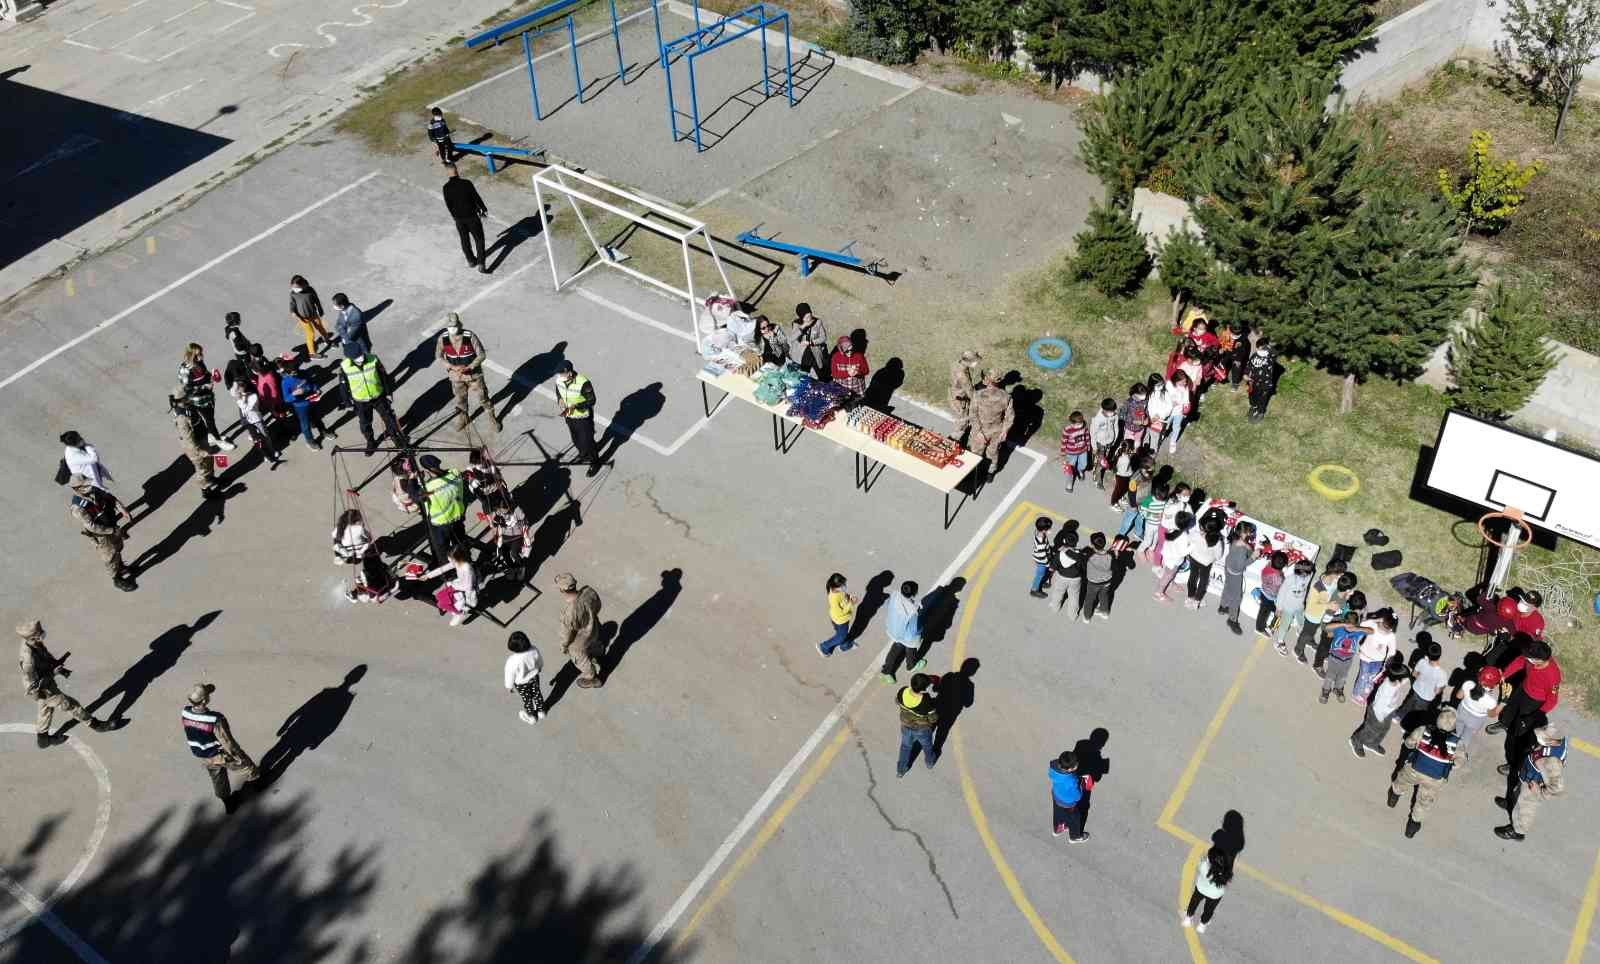 Jandarmadan köy okulundaki çocuklara salıncak sürprizi #erzincan